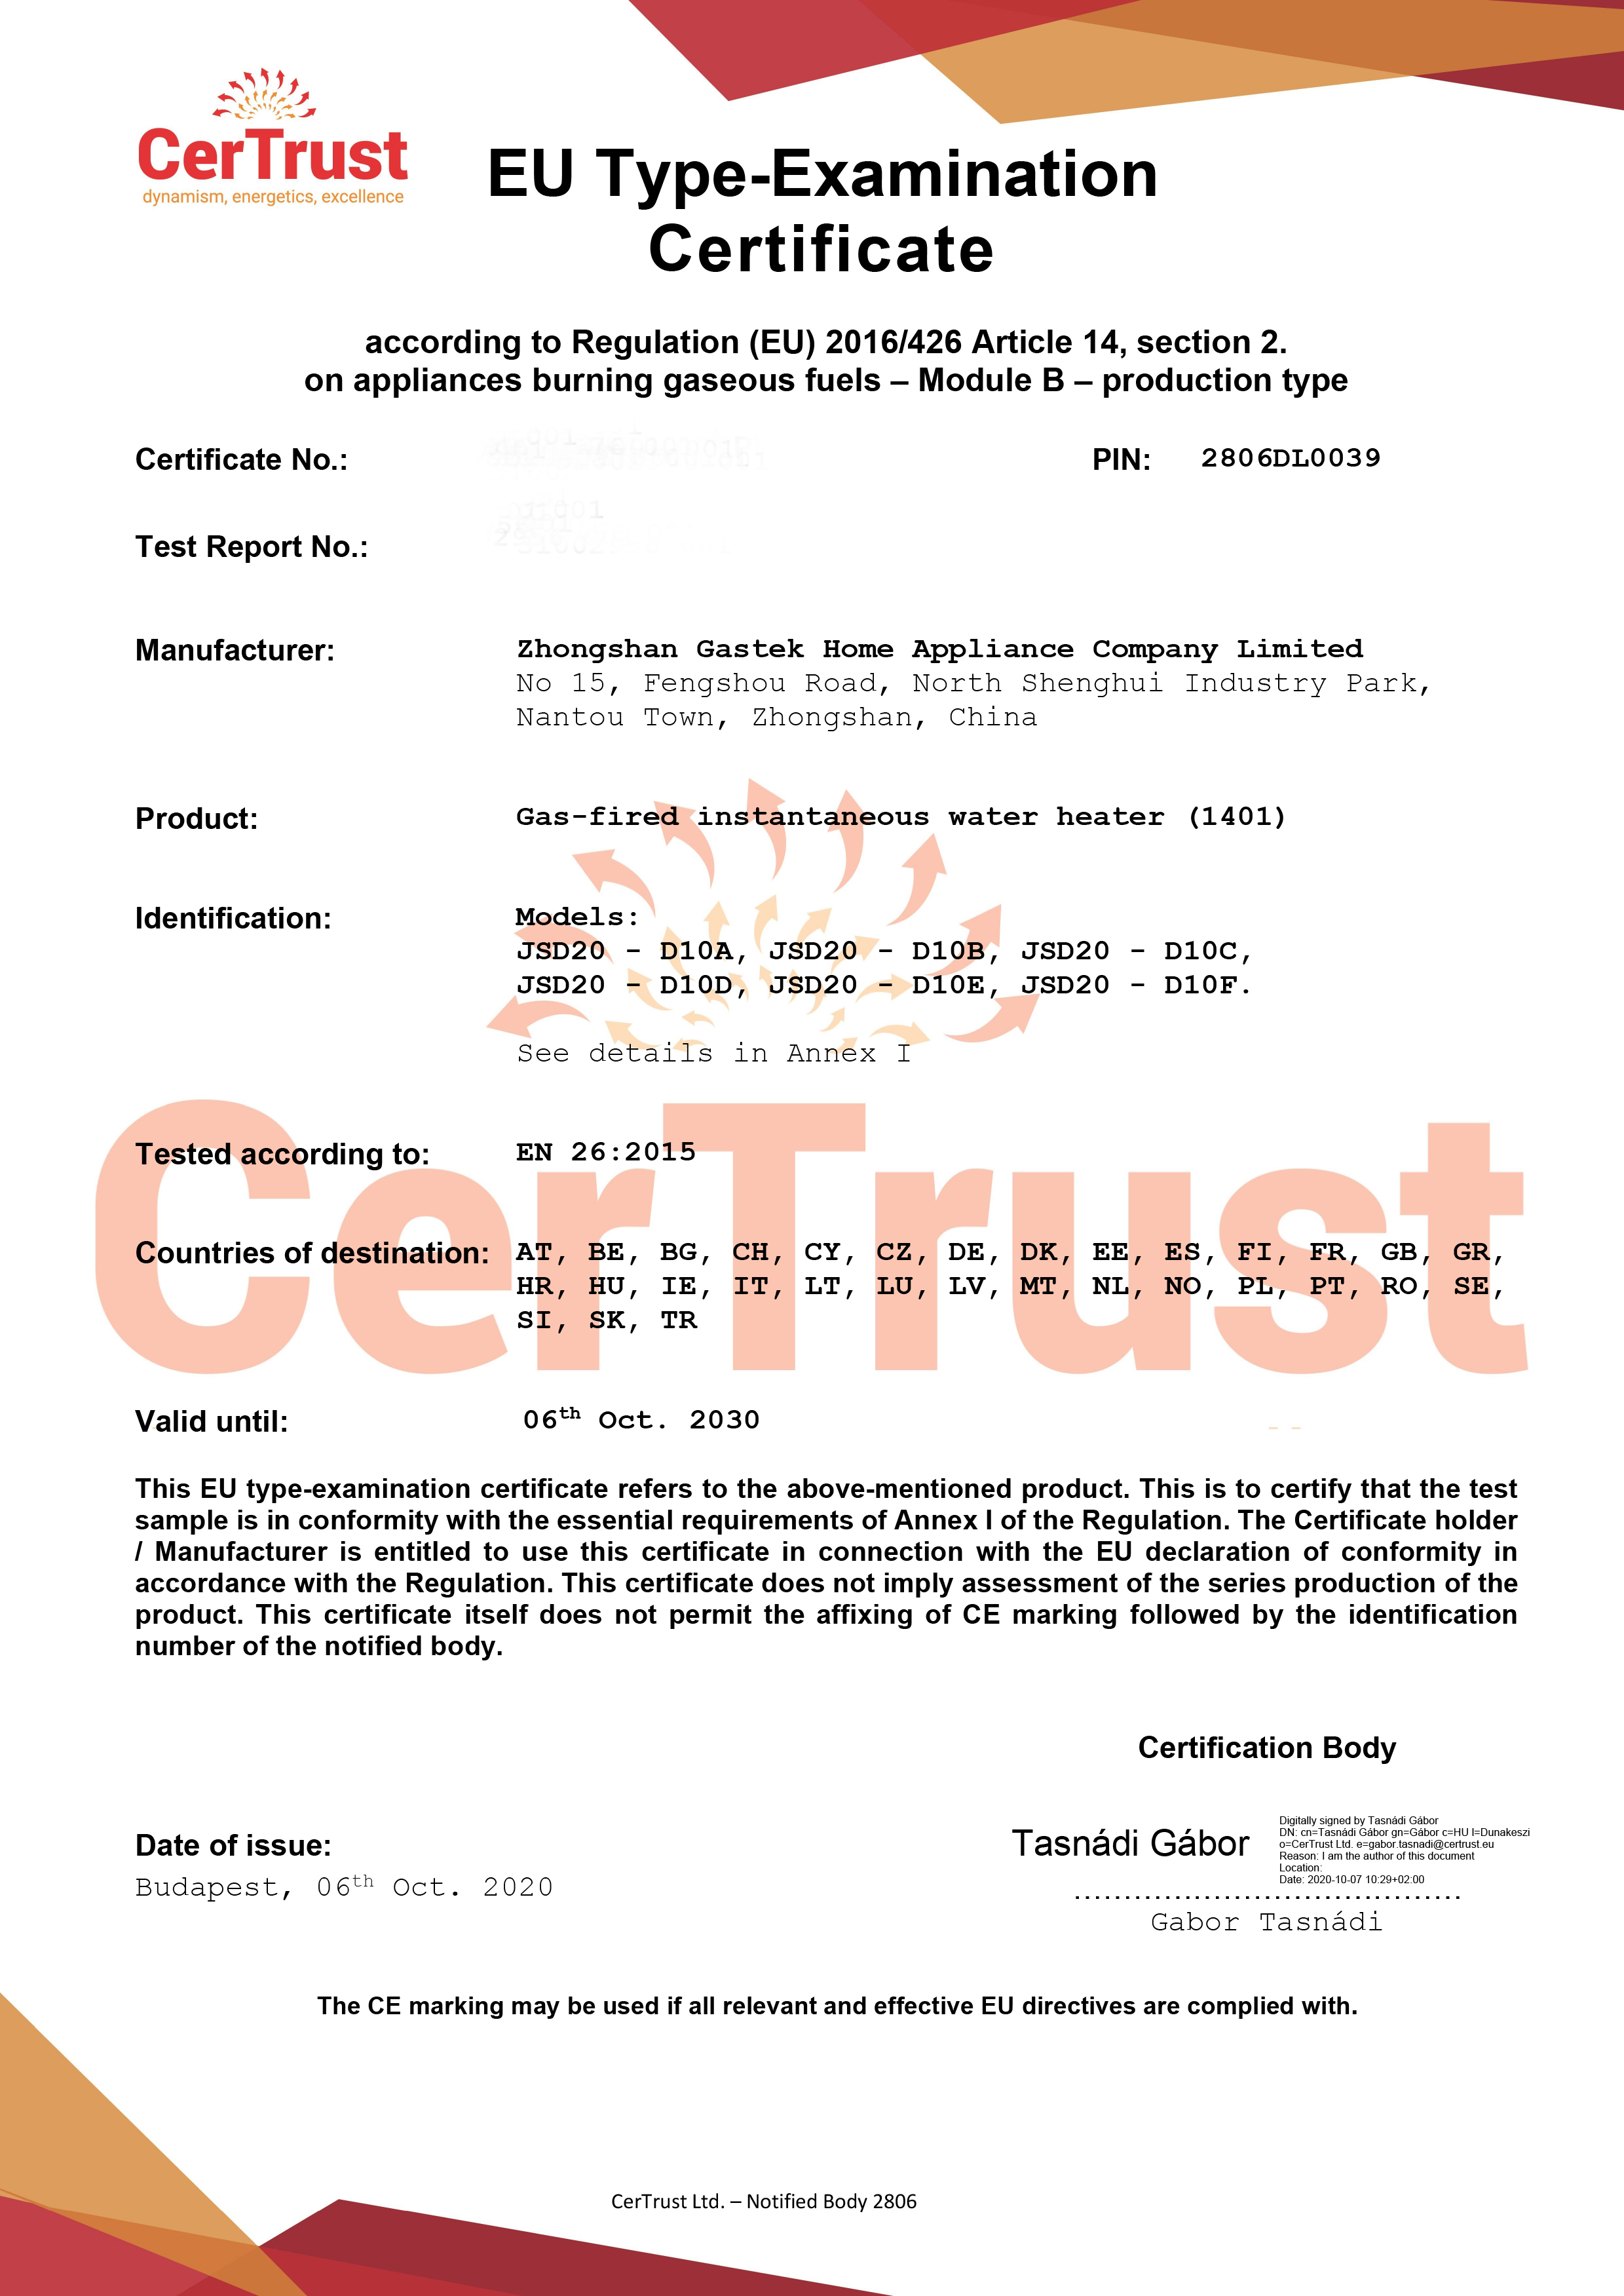 Gastek fik CE-certifikatet for gasvandvarmer i oktober